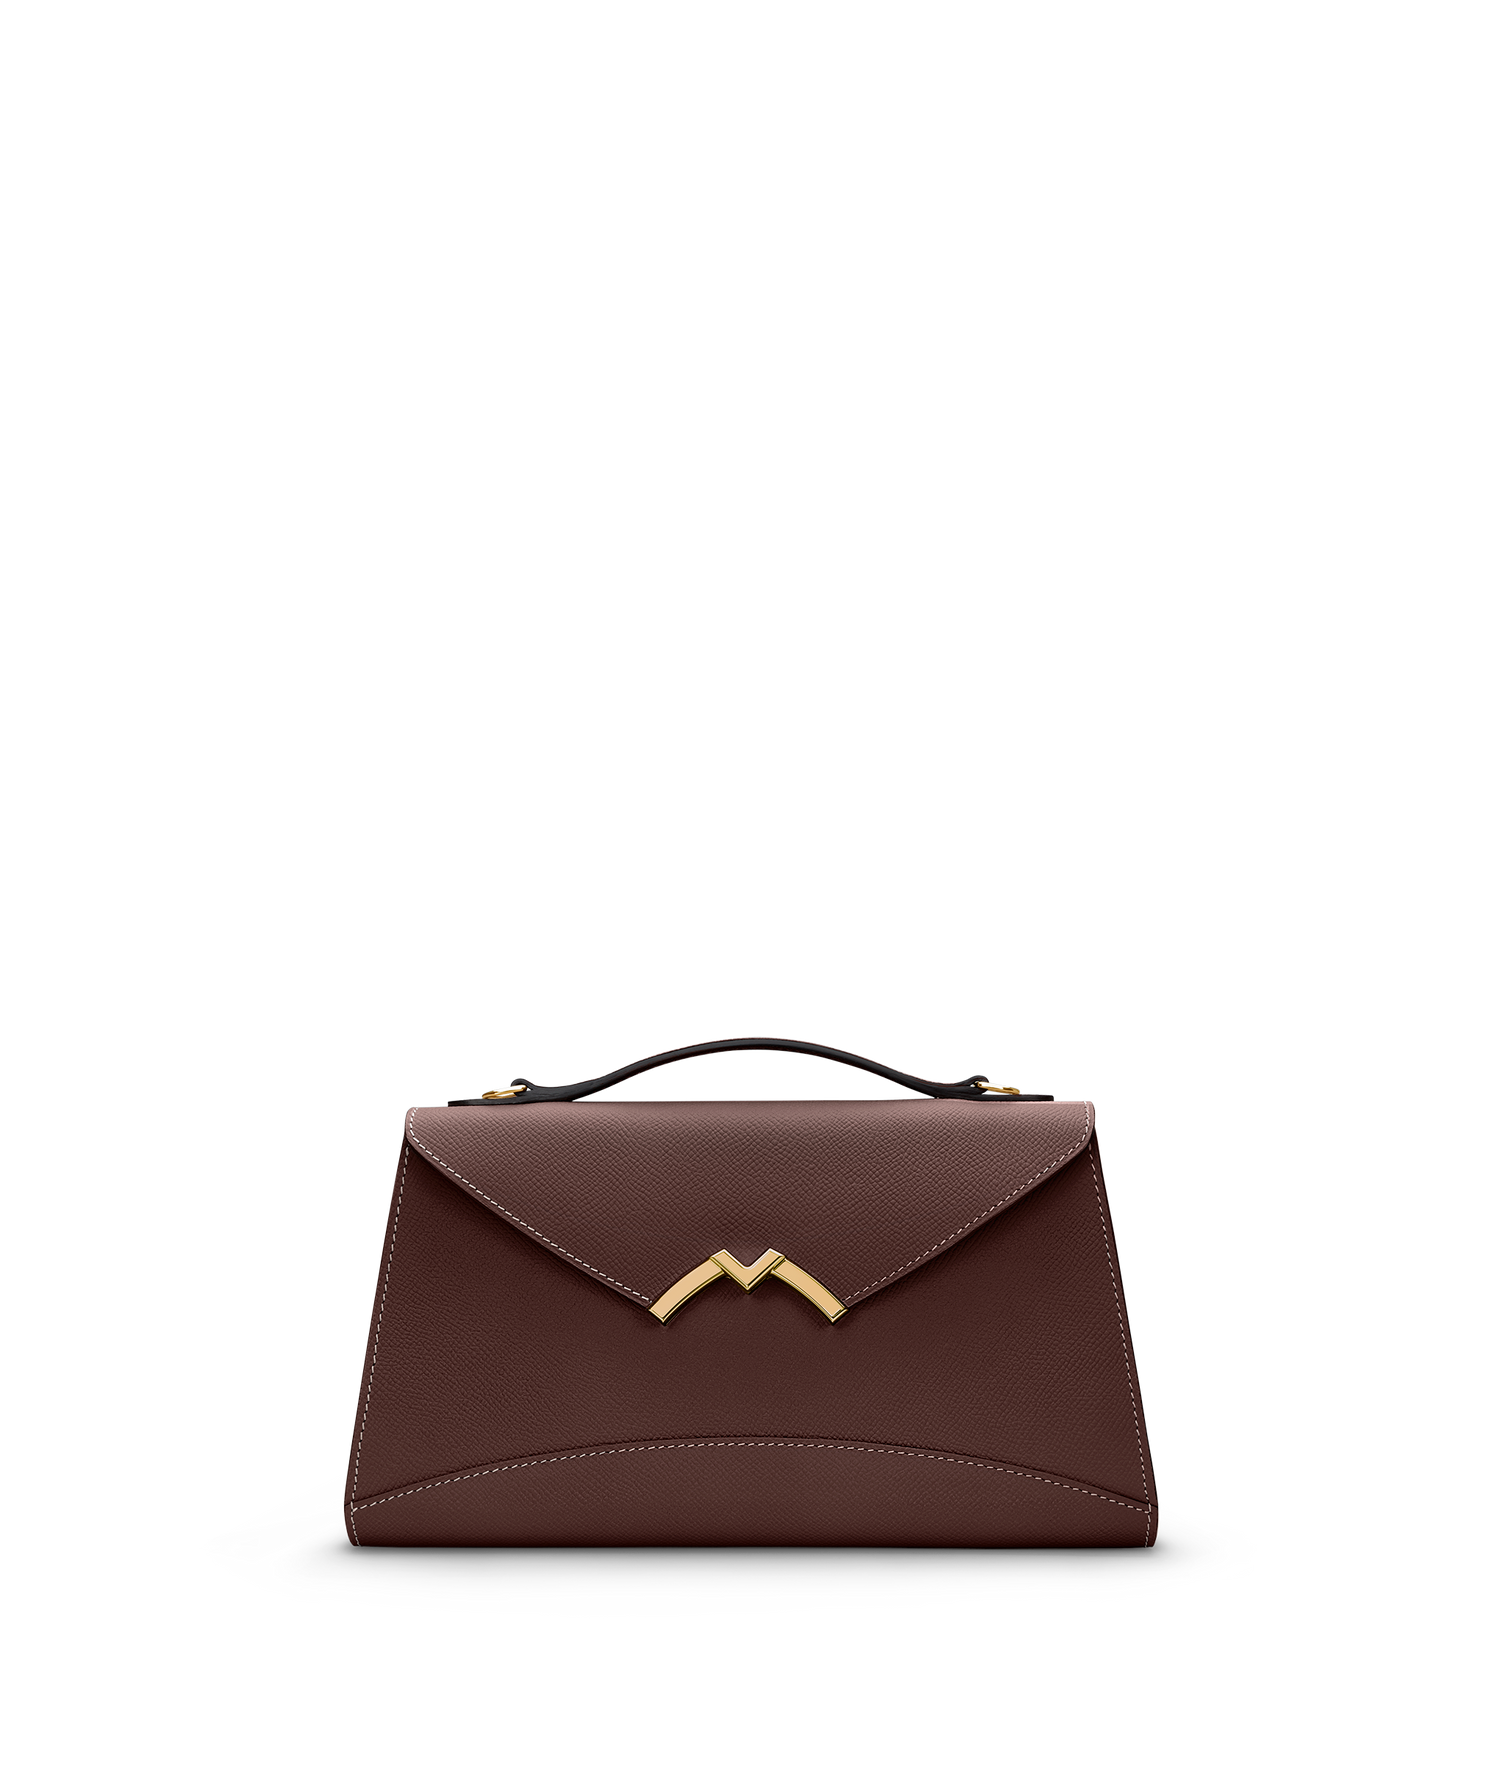 Moynat Paris - Gabrielle Clutch Handbag - Green - in Leather - Luxury